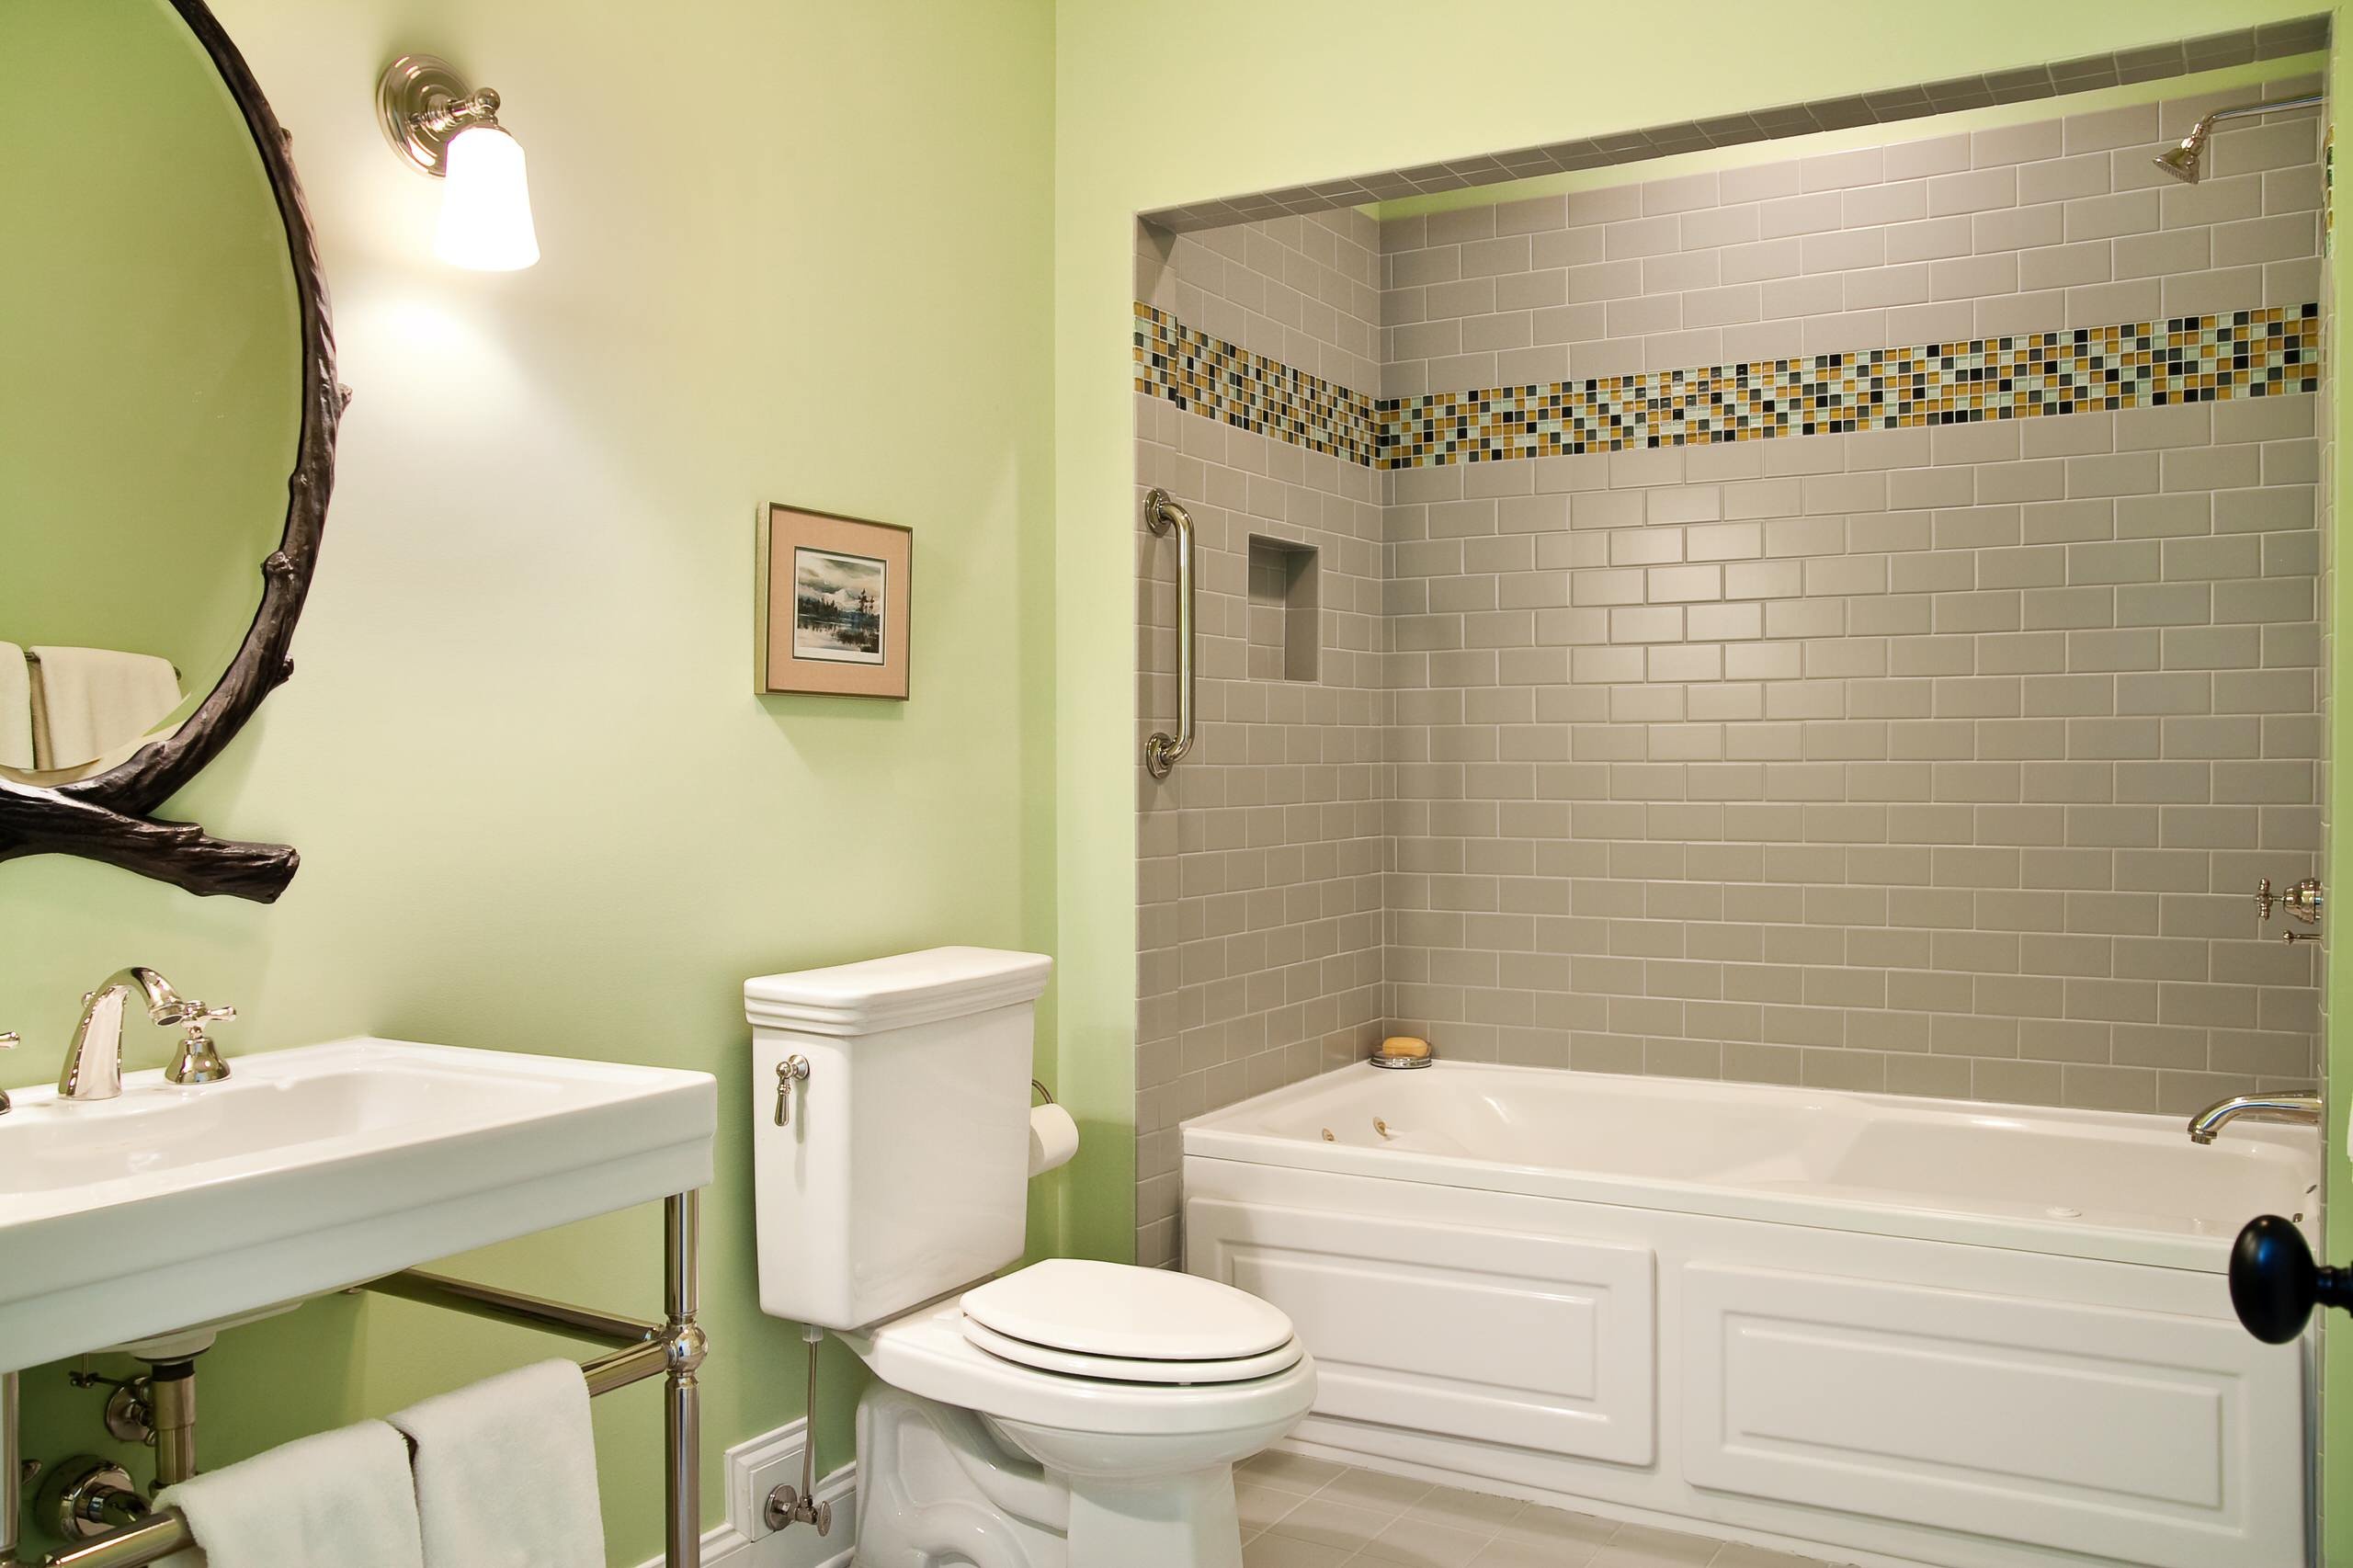 ванная комната плитка и покраска дизайн фото